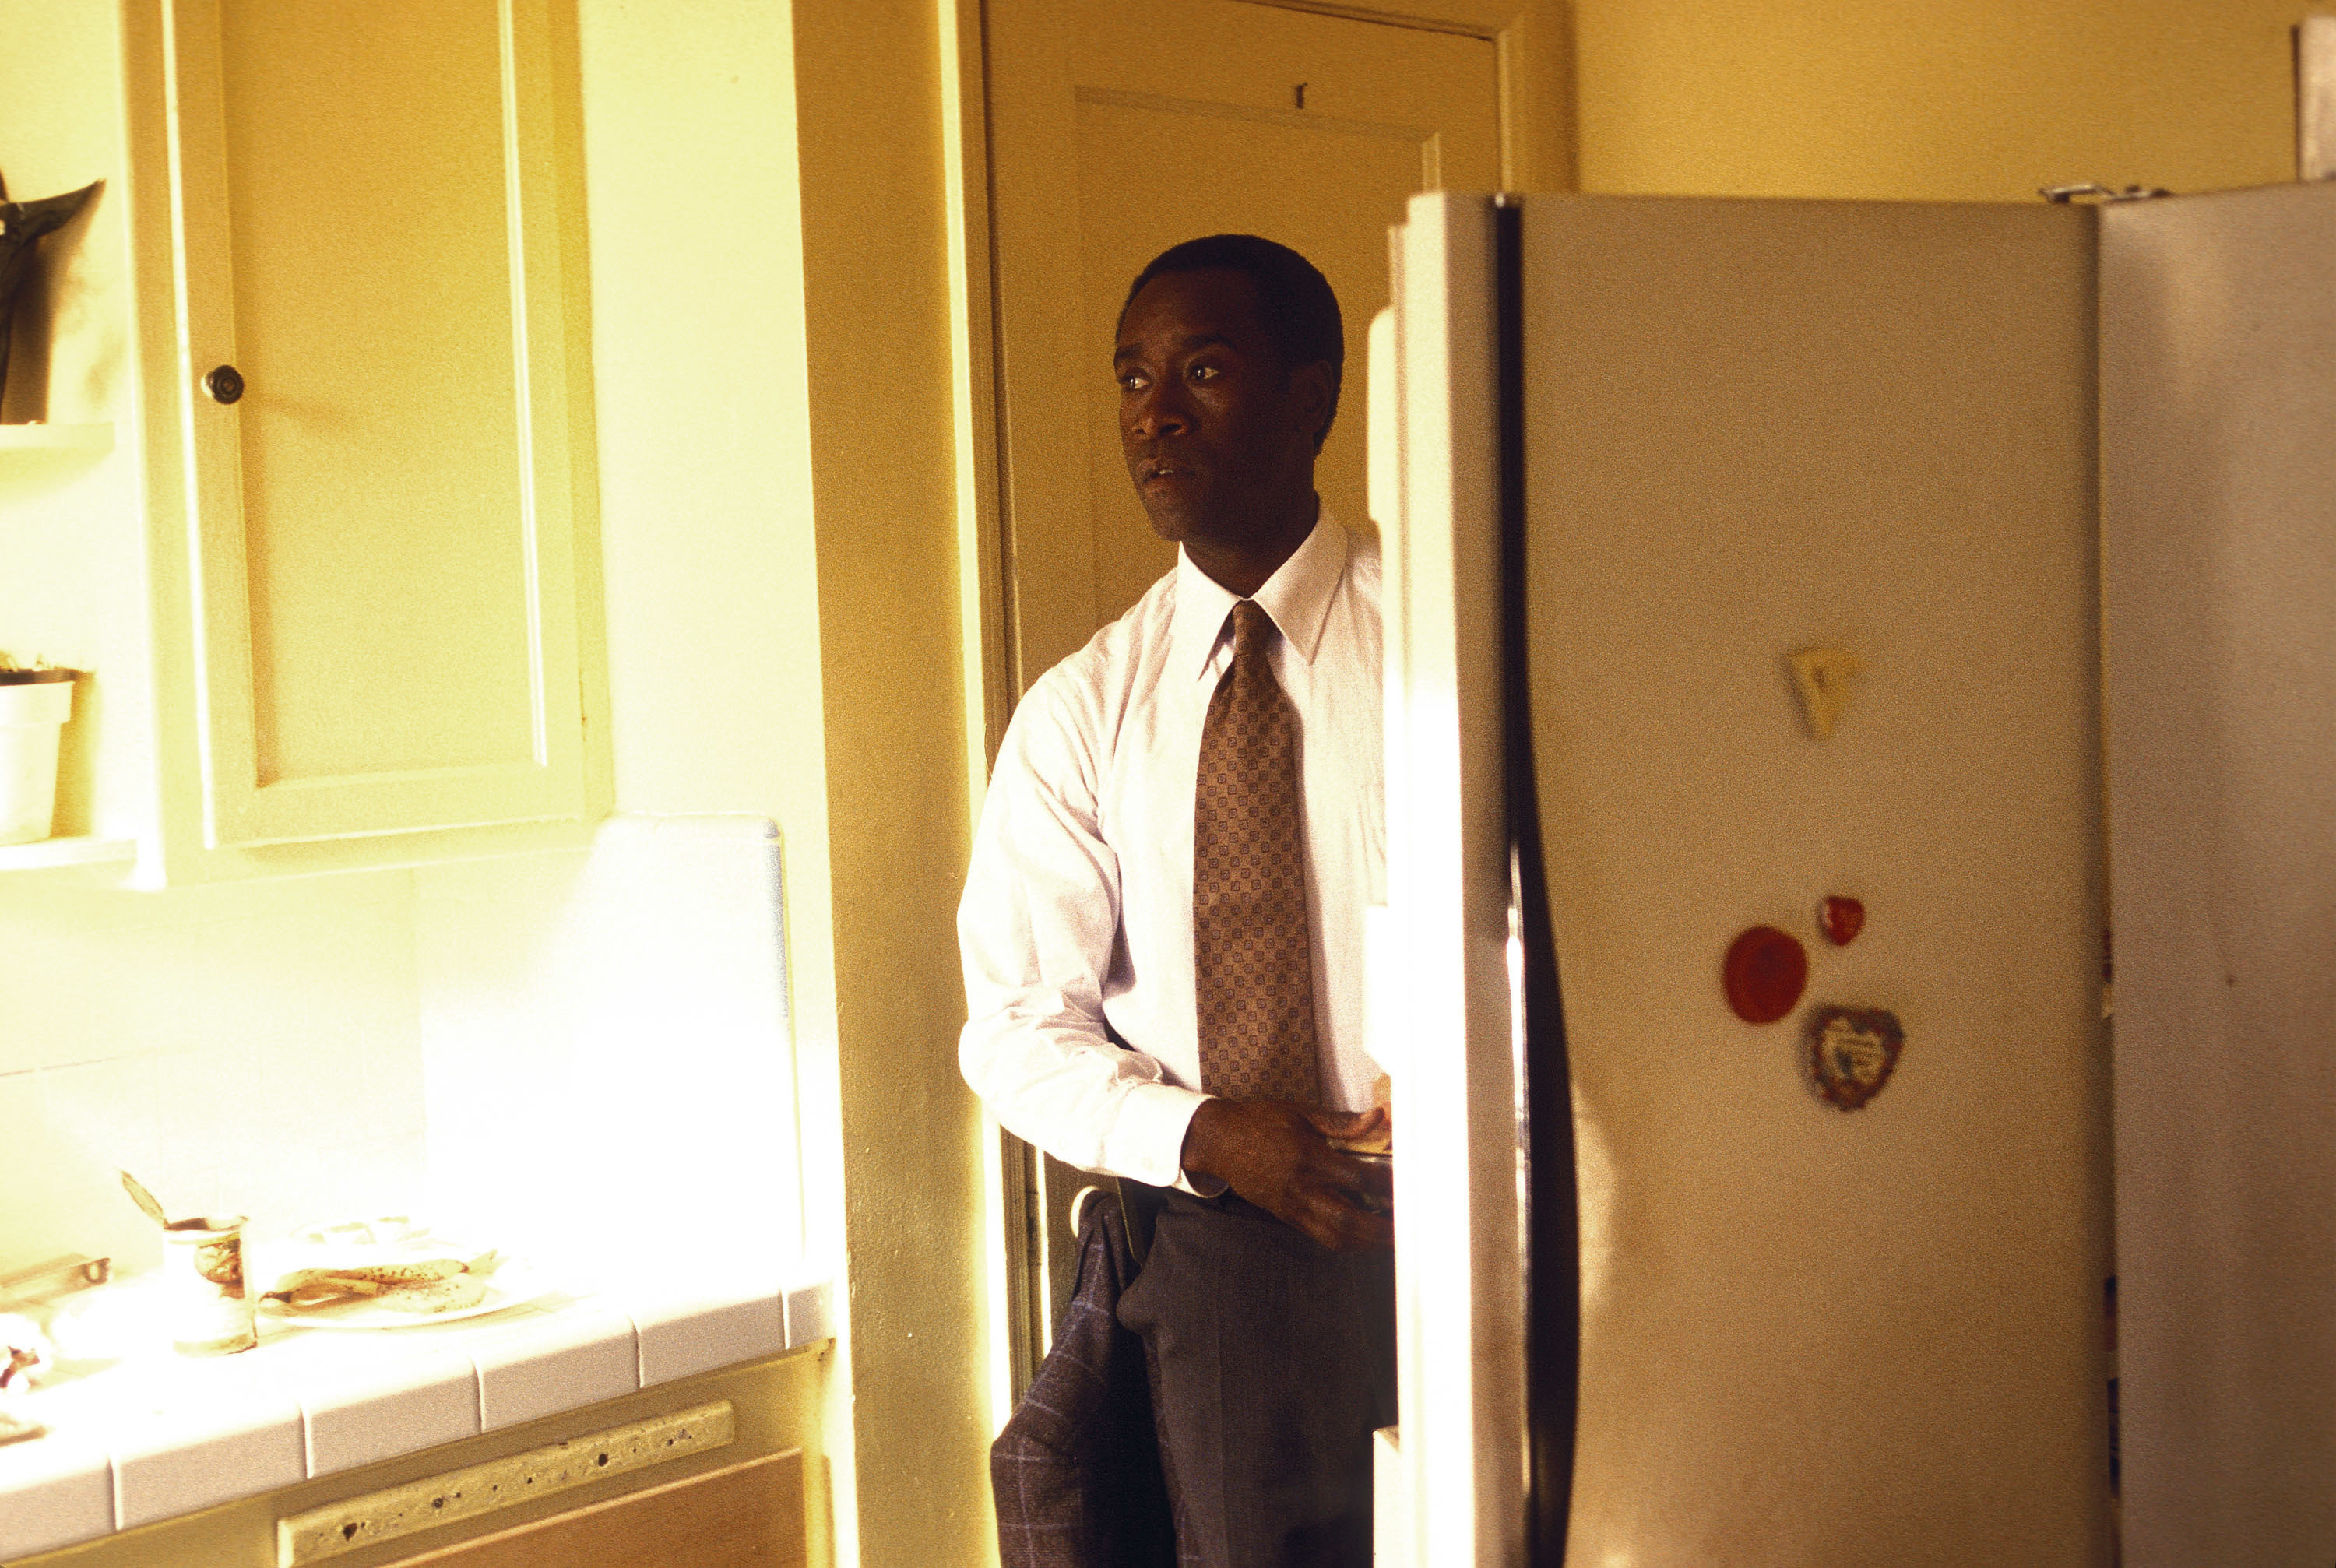 a man standing by an open fridge